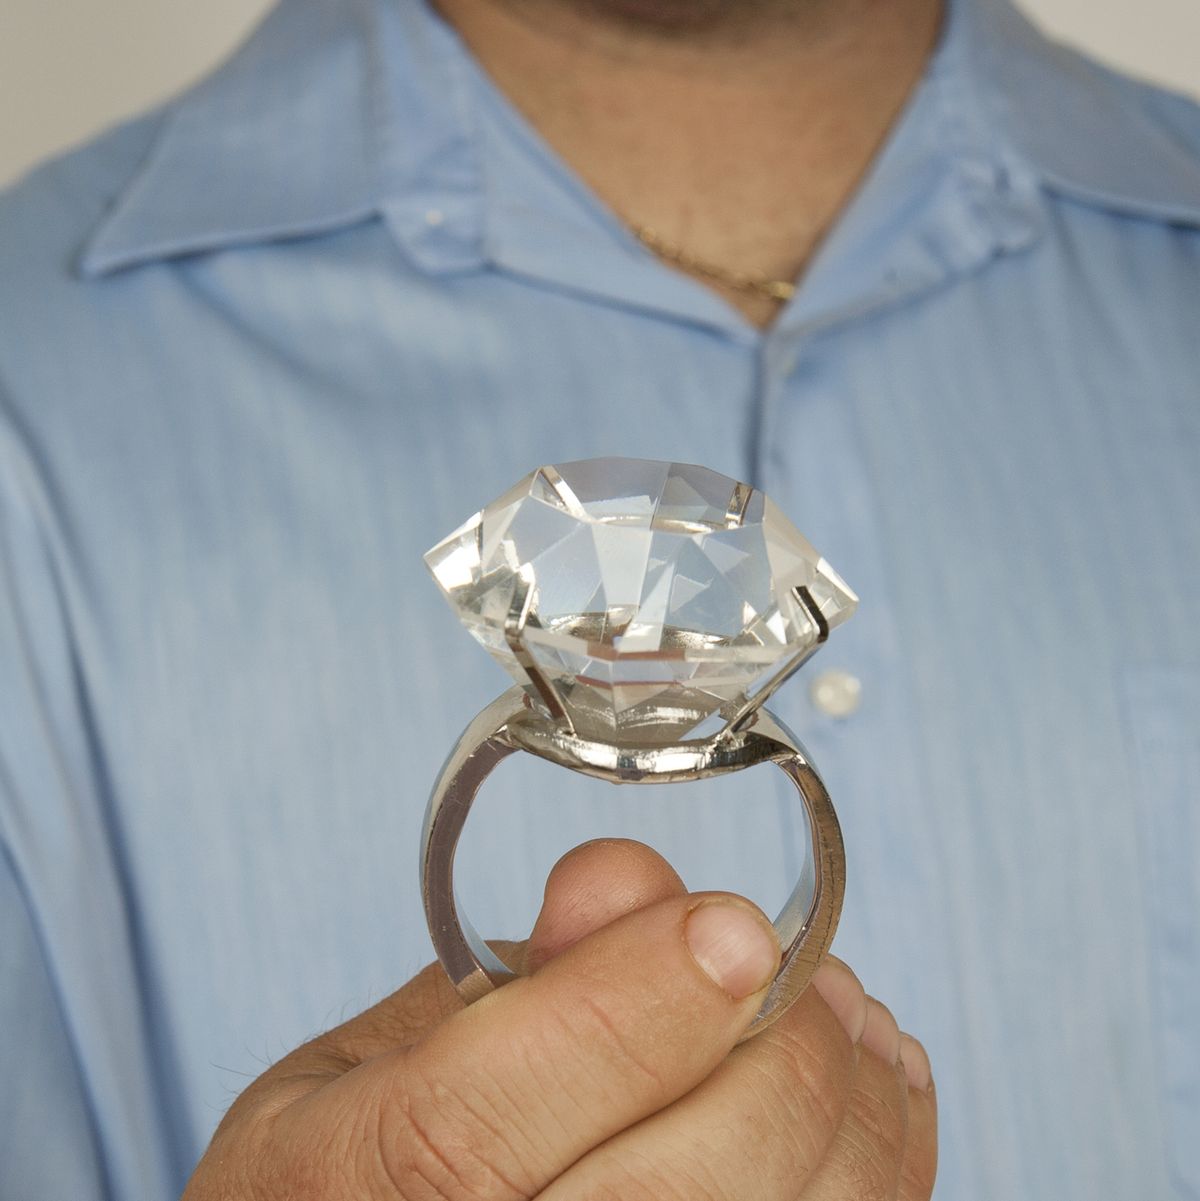 Los peligros de usar un anillo para el pene para obtener más placer sexual